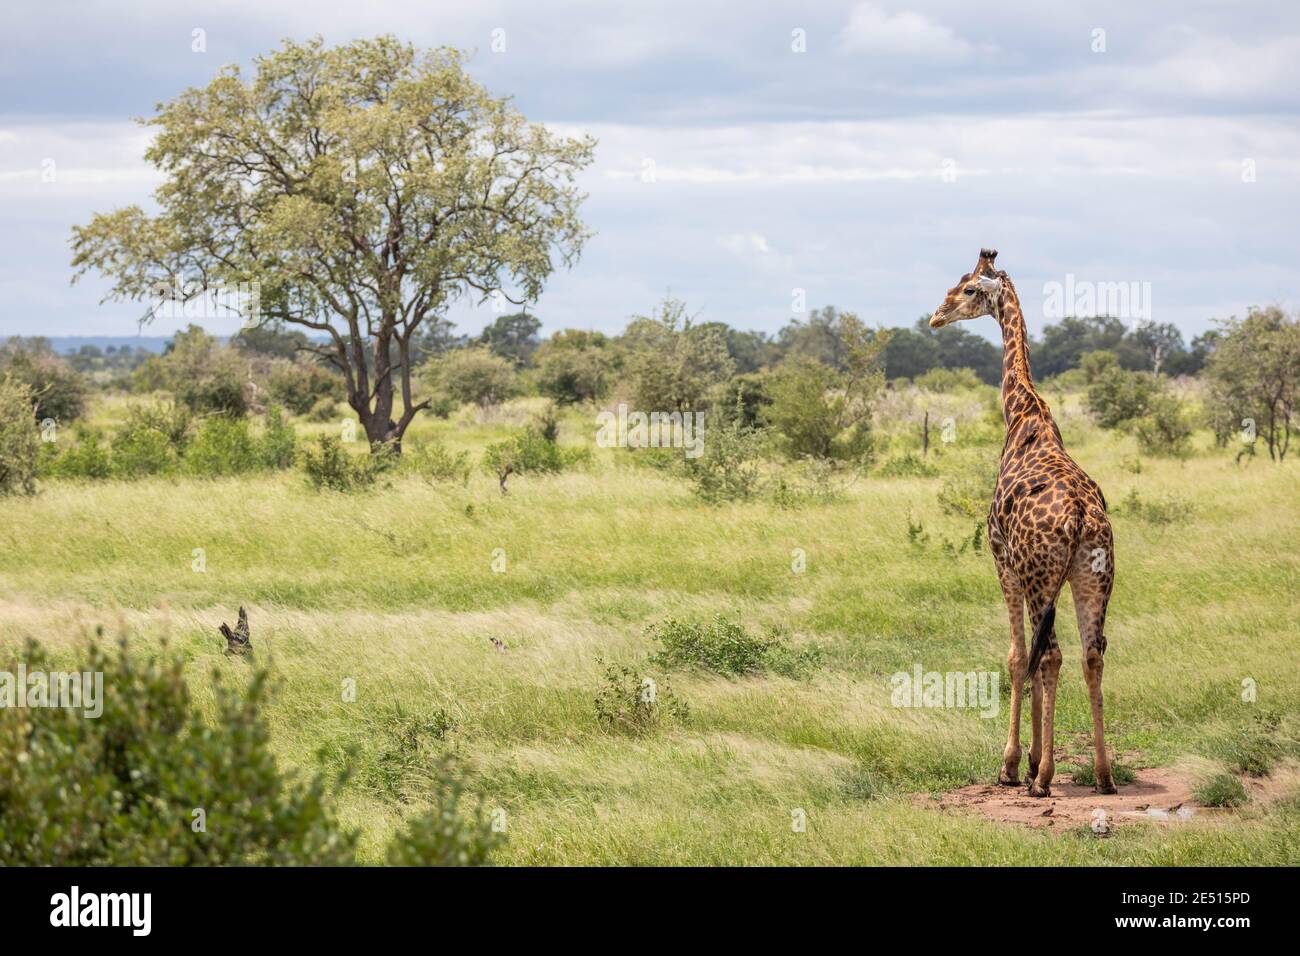 Paysage sud-africain emblématique avec une girafe solitaire dans la savane, entourée de buissons verts et d'un arbre lointain Banque D'Images